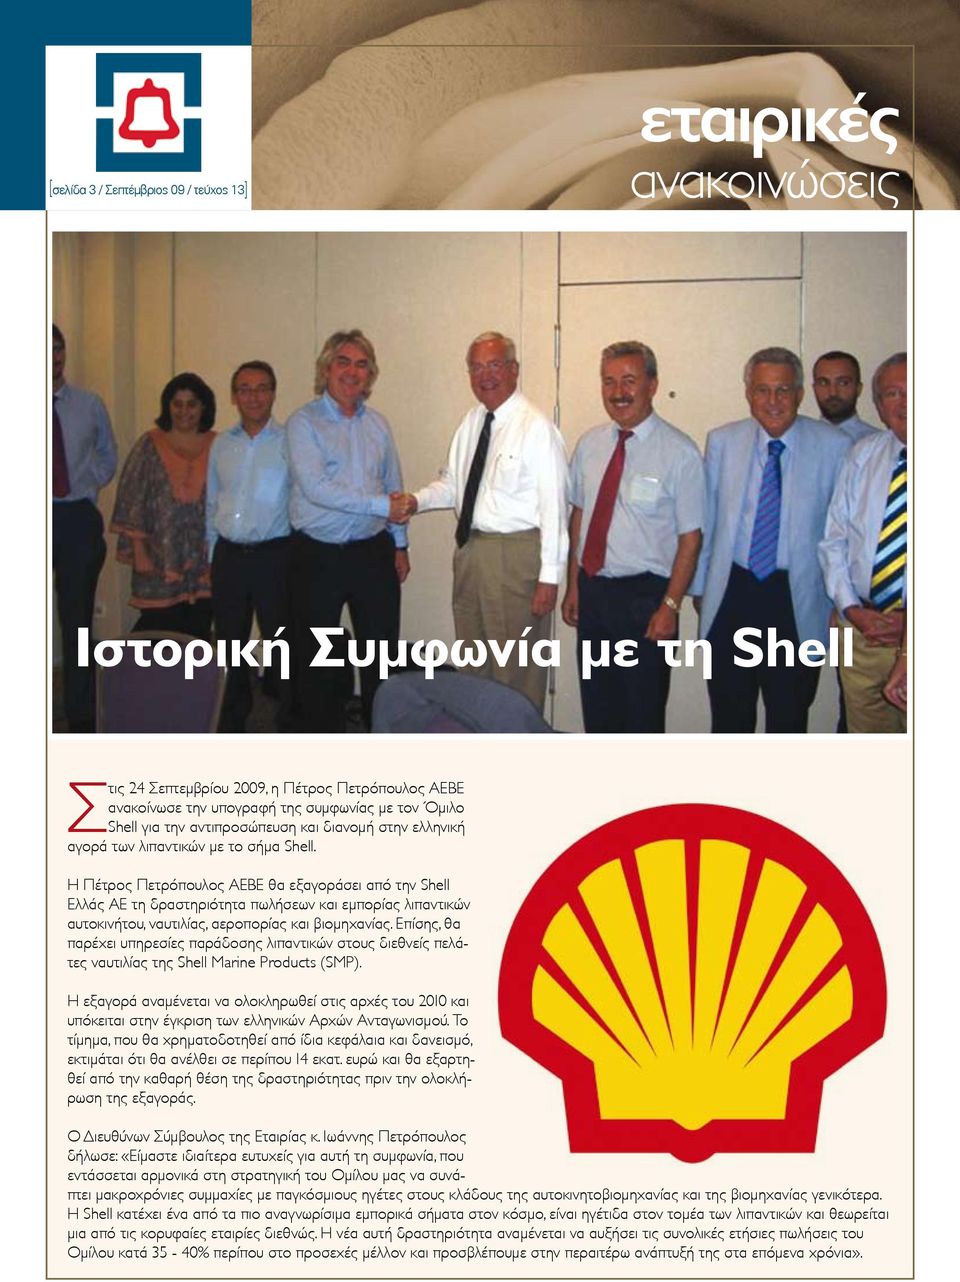 Η Πέτρος Πετρόπουλος ΑΕΒΕ θα εξαγοράσει από την Shell Ελλάς ΑΕ τη δραστηριότητα πωλήσεων και εμπορίας λιπαντικών αυτοκινήτου, ναυτιλίας, αεροπορίας και βιομηχανίας.